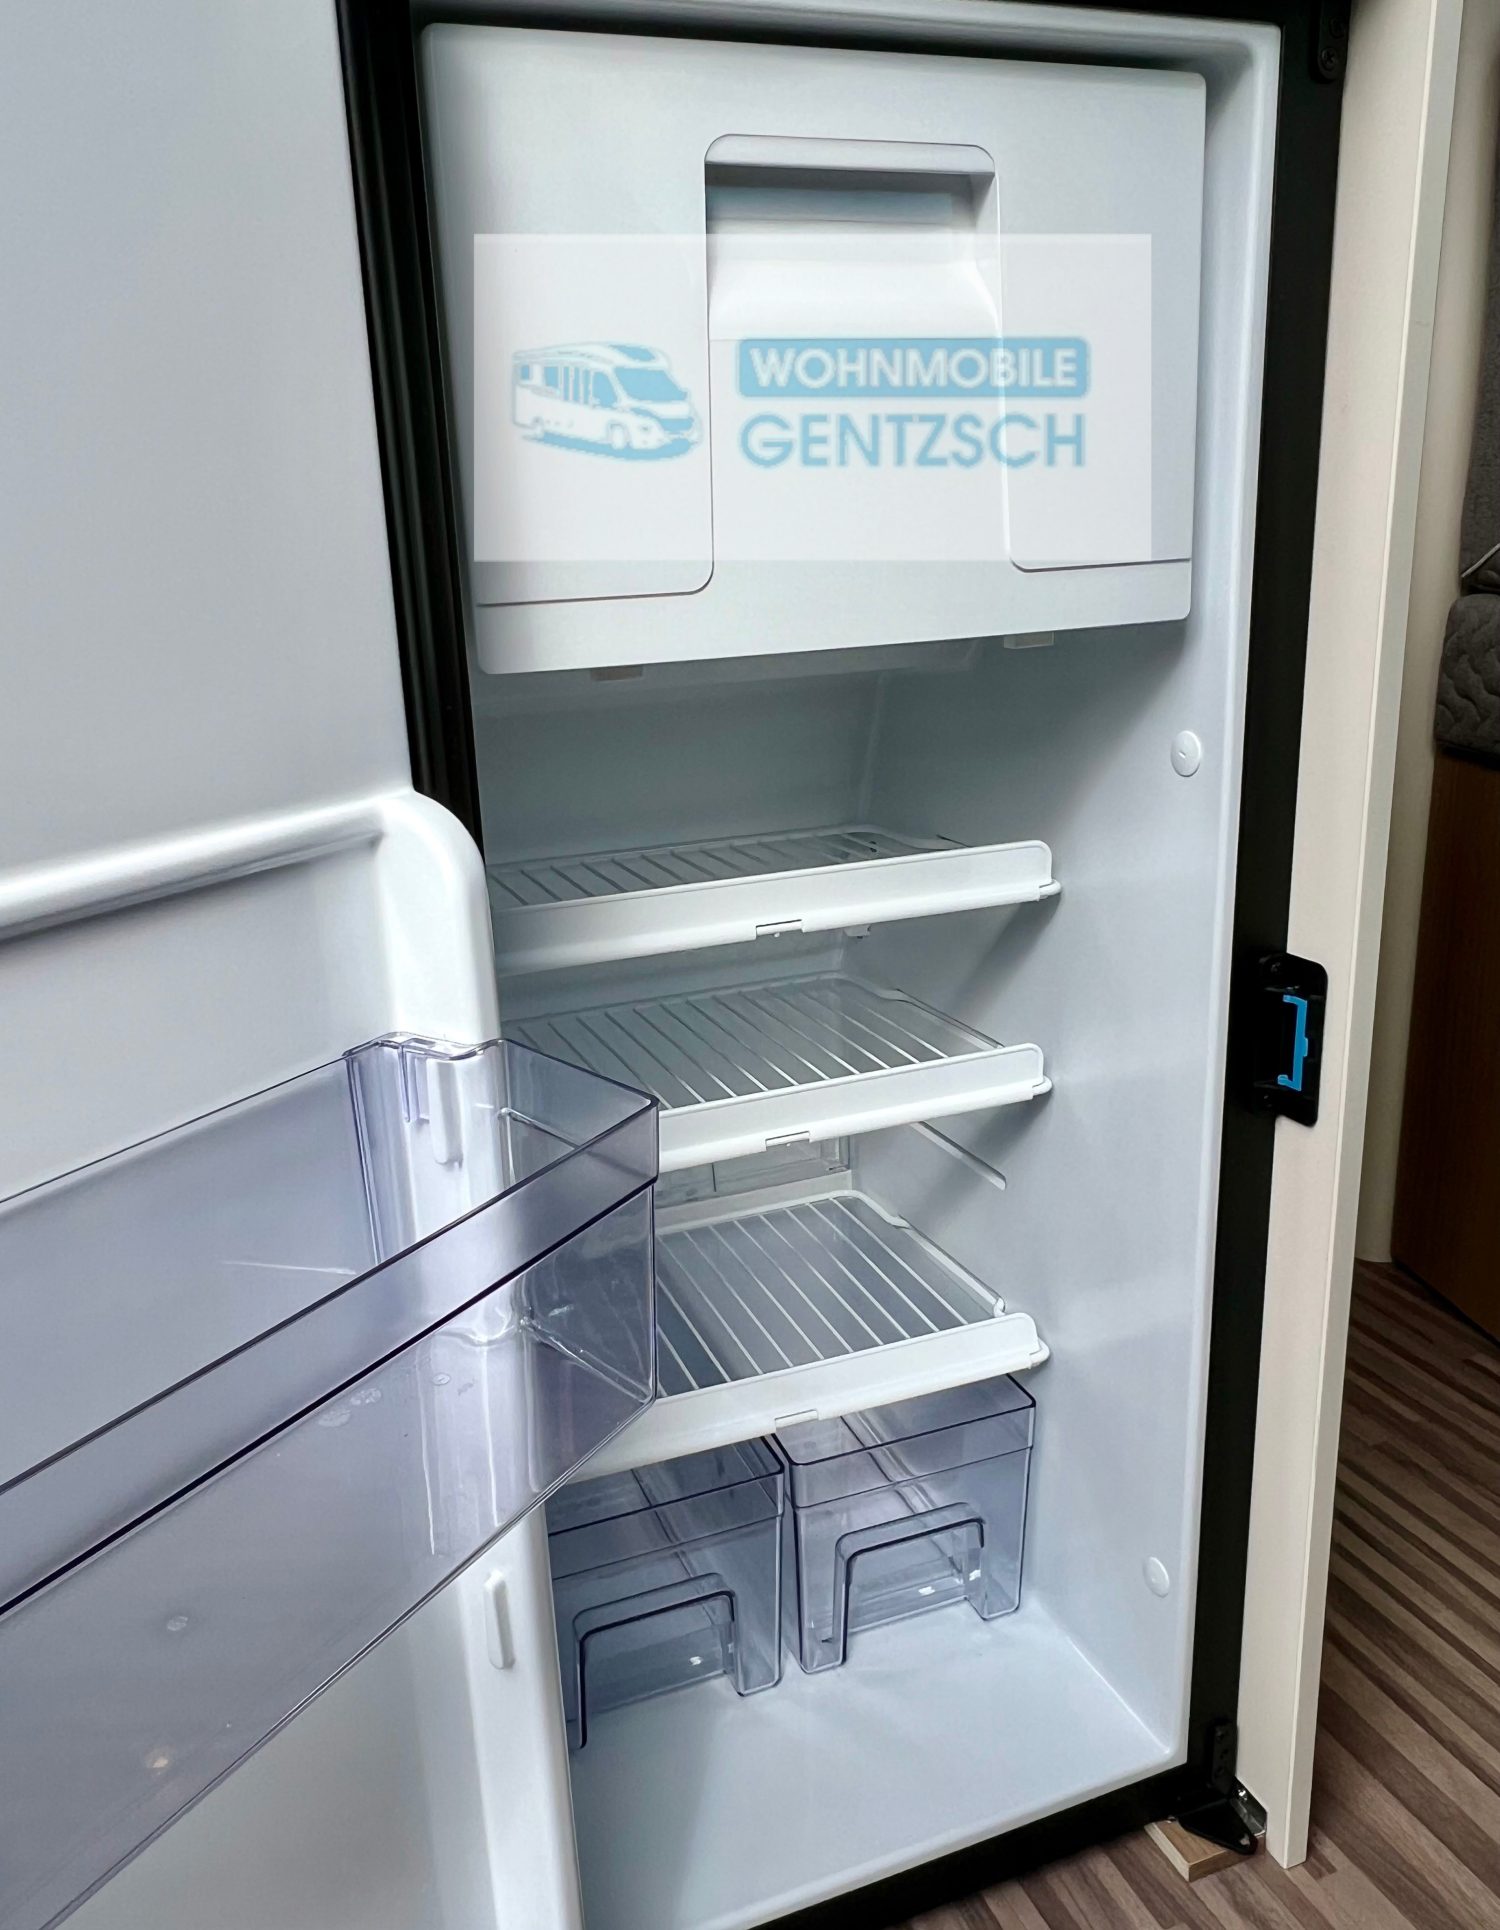 großer Kühlschrank mit Kühlfach im Eingang, neue Modelle Malibu, mieten Wohnmobil Gentzsch